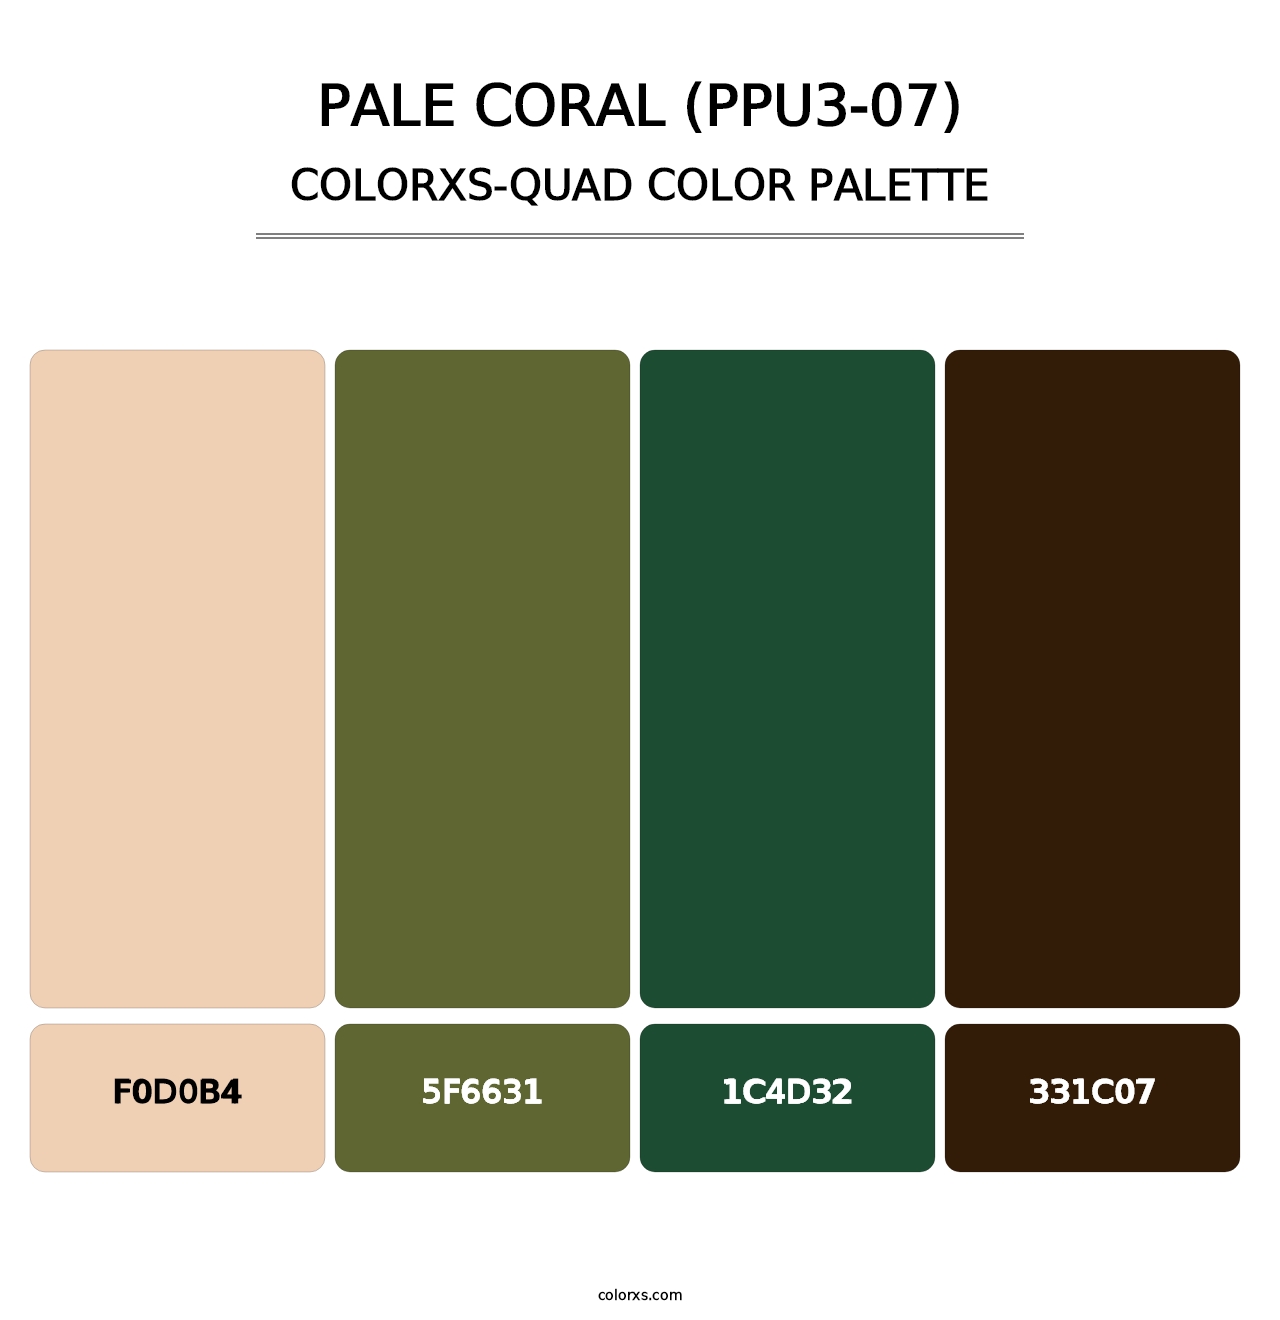 Pale Coral (PPU3-07) - Colorxs Quad Palette